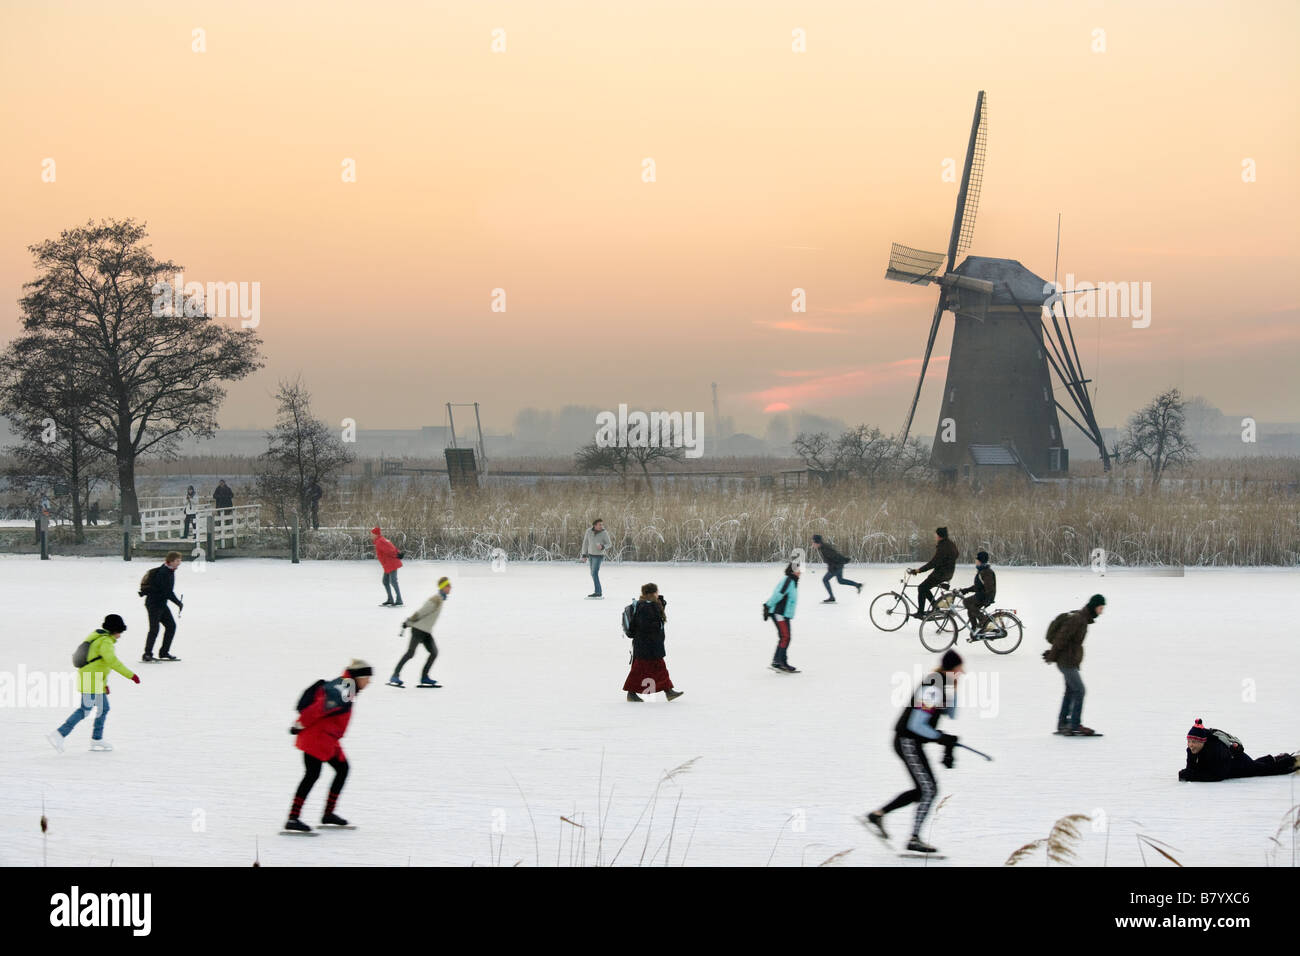 Pattinaggio sul ghiaccio e persino i ciclisti sul ghiaccio naturale nella parte anteriore di un mulino a vento a Kinderdijk Holland, Paesi Bassi. Al tramonto. Foto Stock